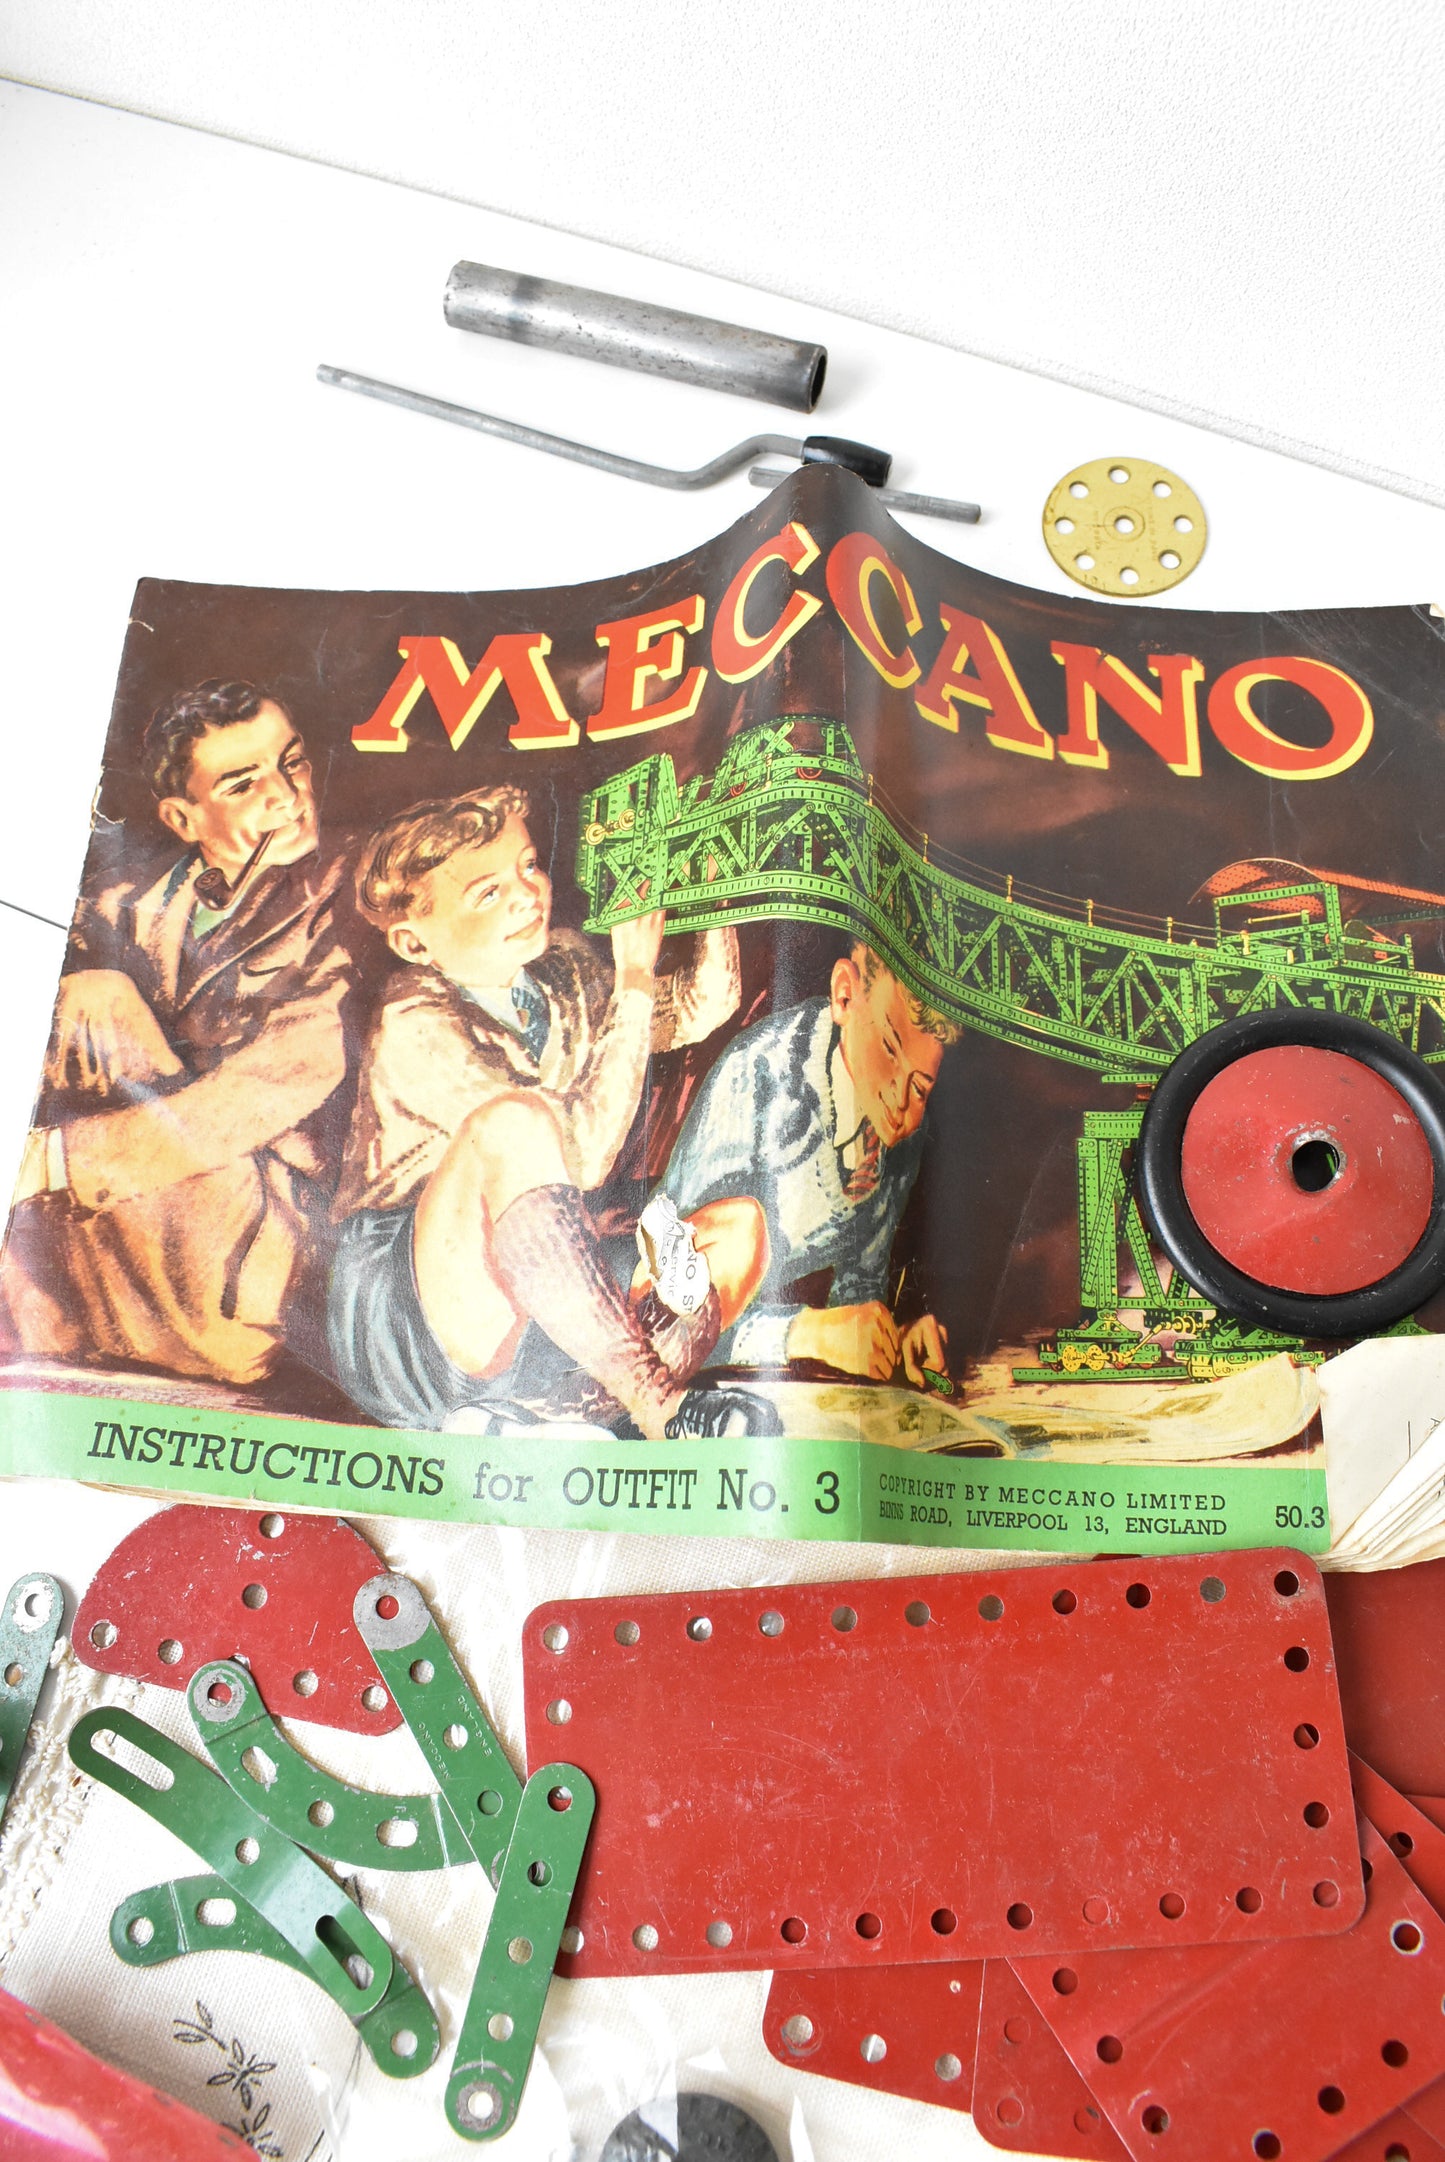 Vintage Meccano set No. 3